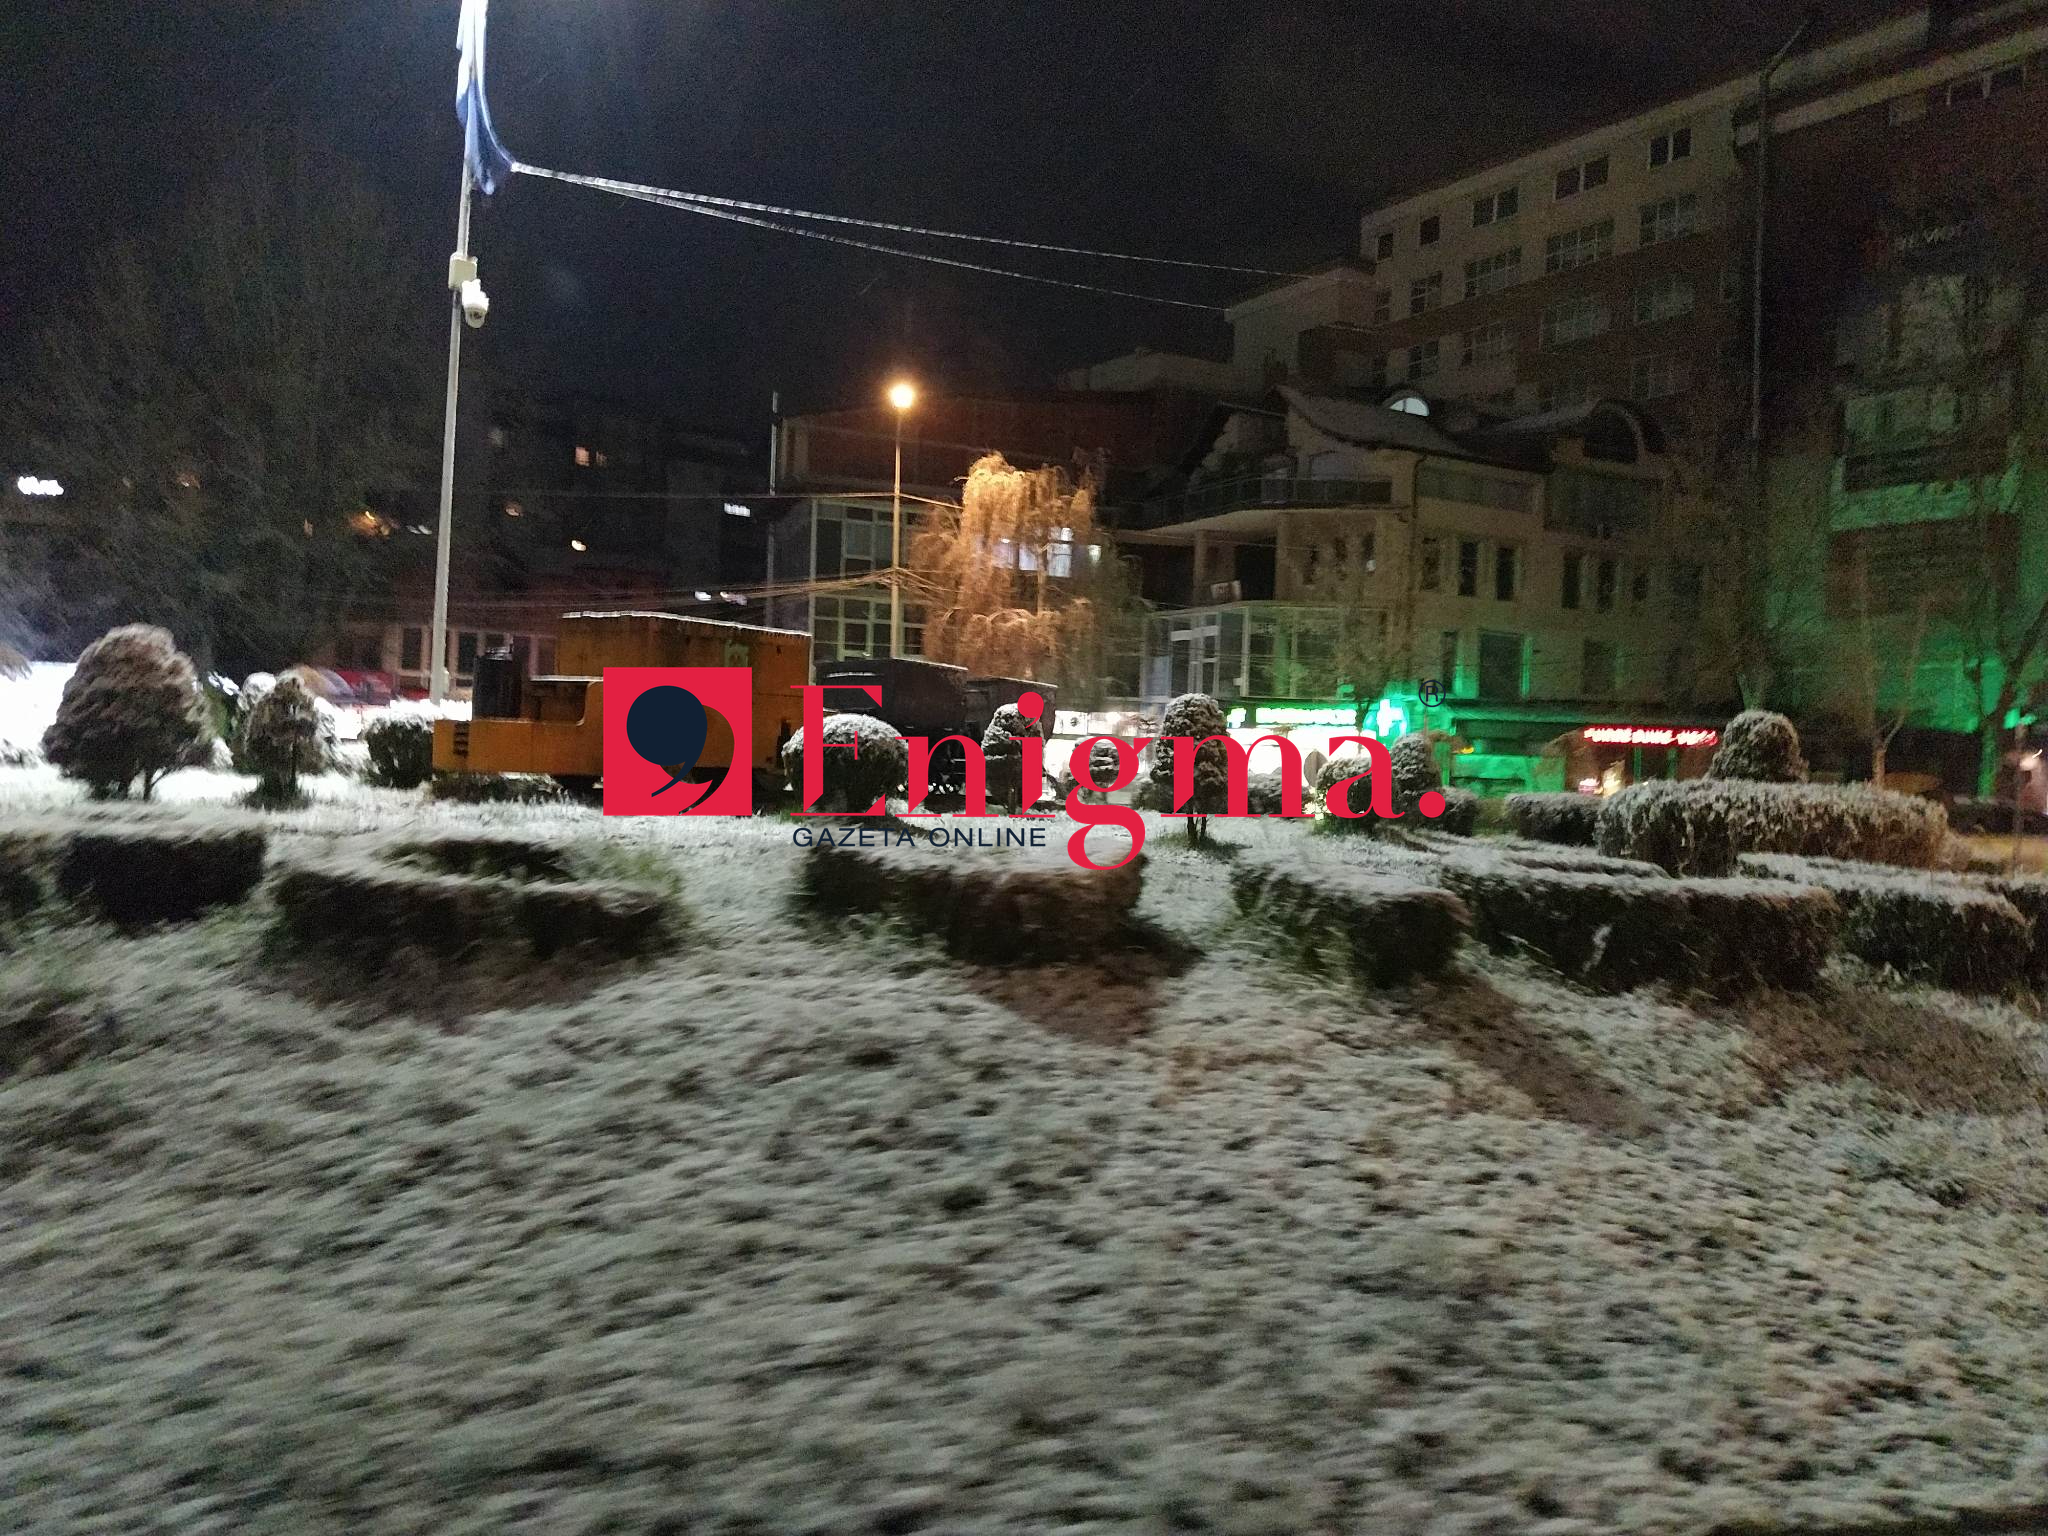 Rikthehet dimri, ky qytet mbulohet nga bora (Foto)